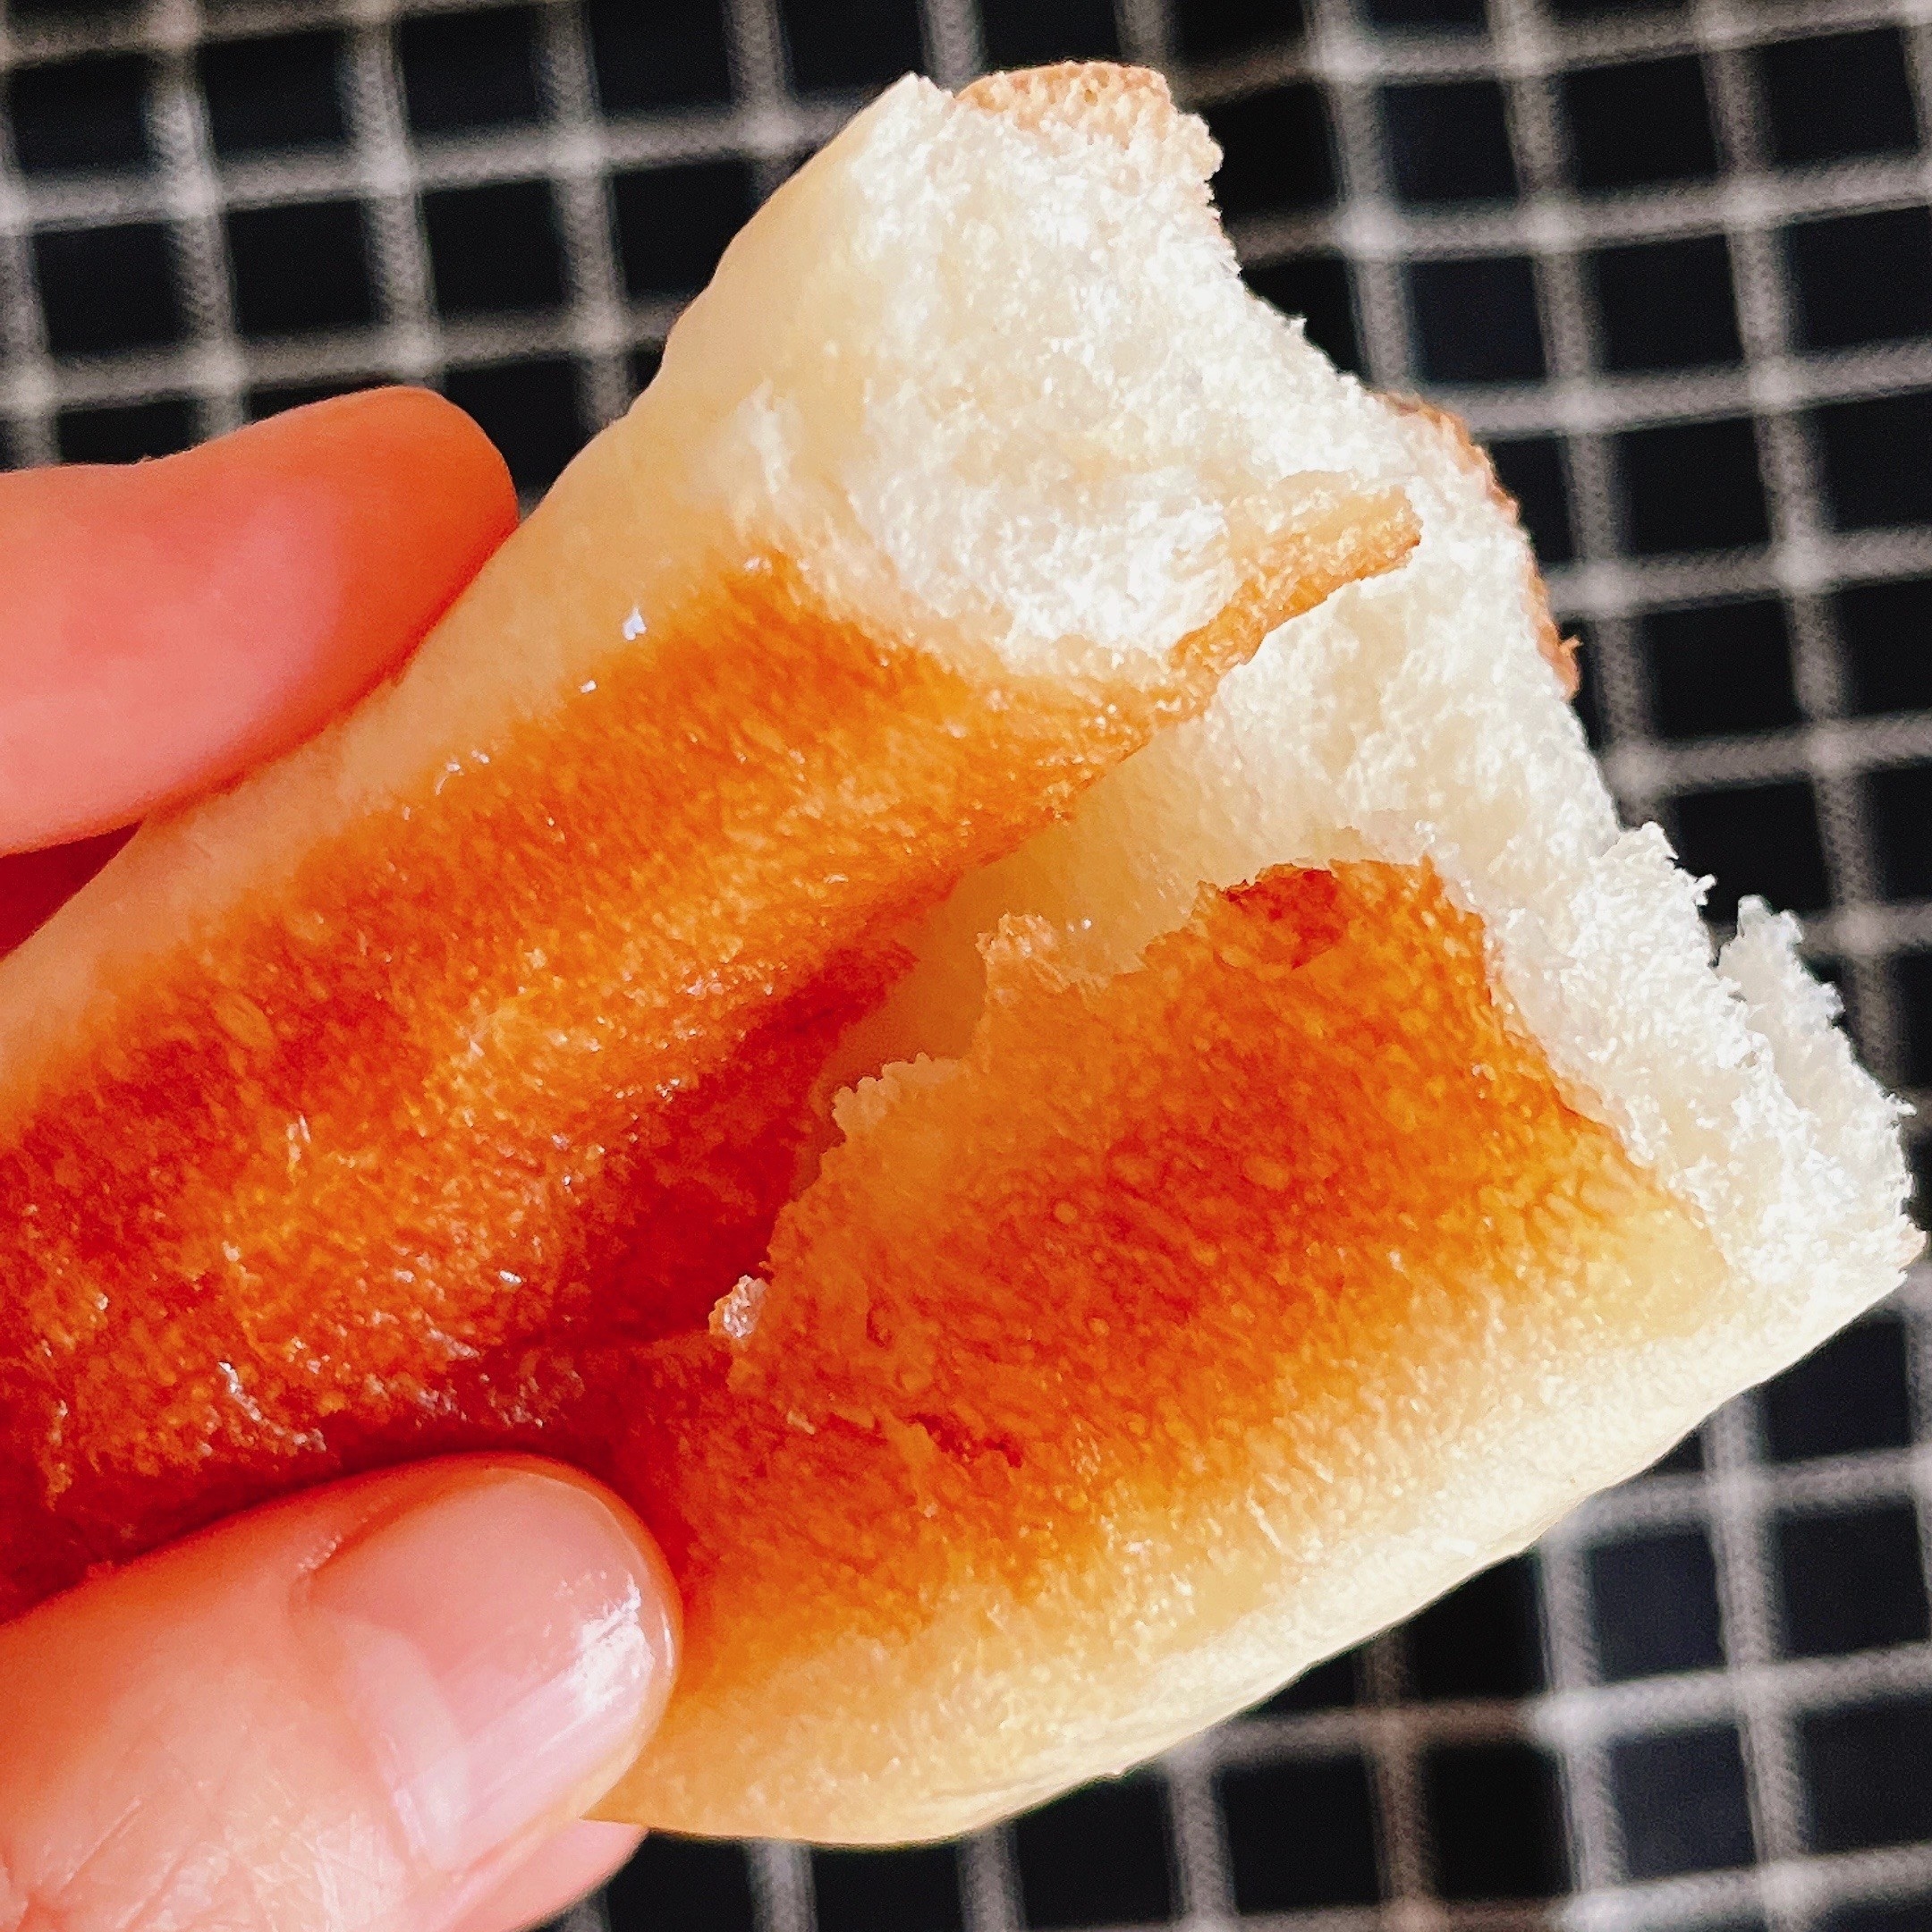 セブンイレブンのおすすめパン「バター香る塩パン3個入り」